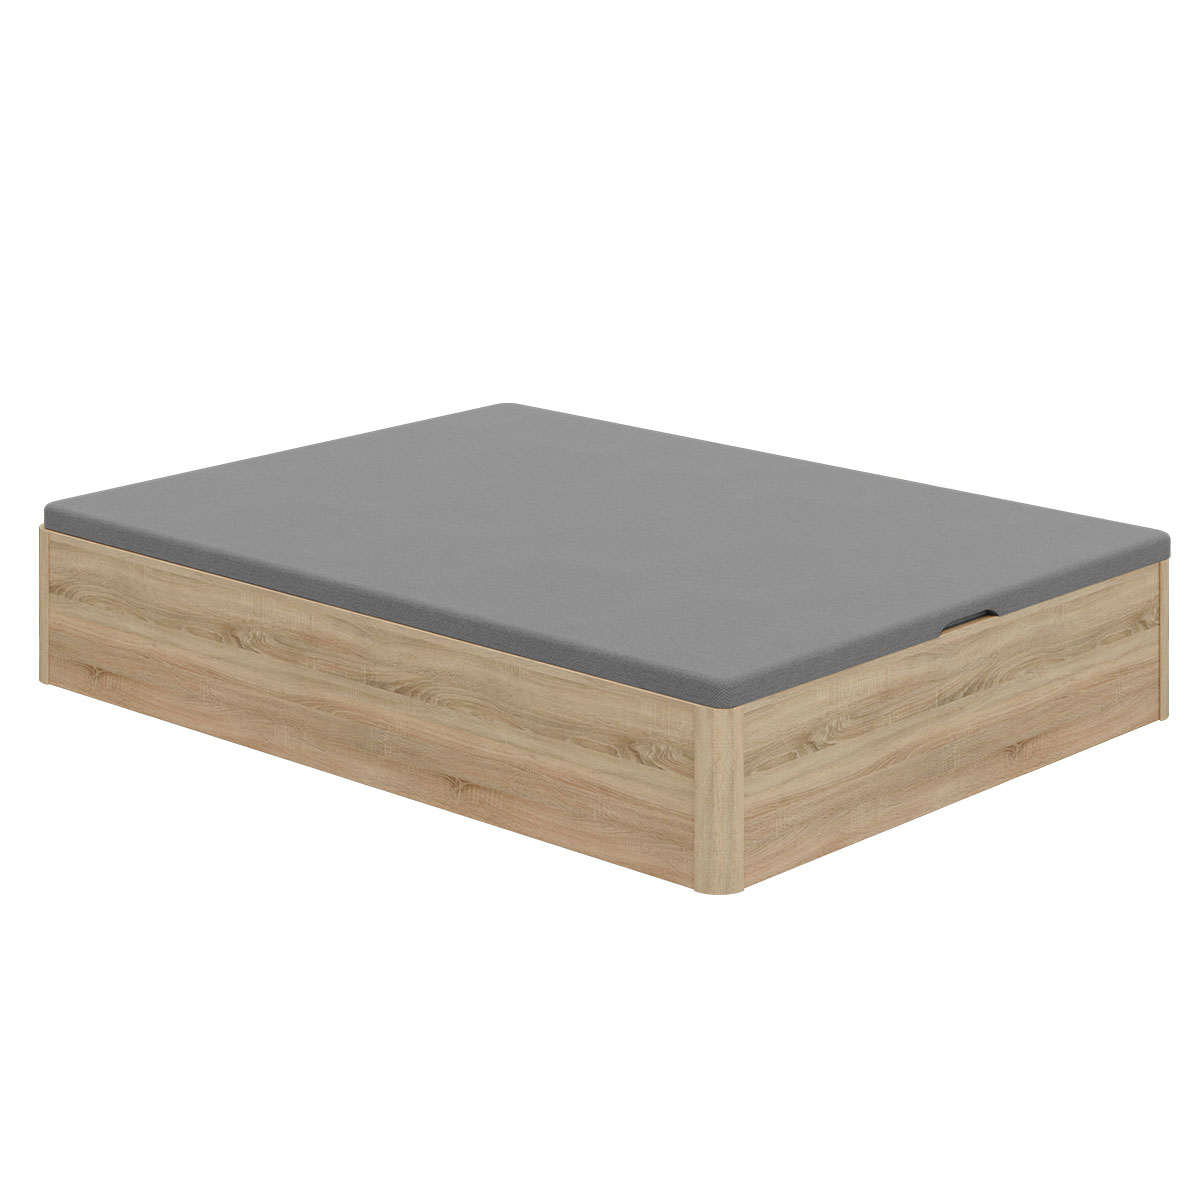 Canapé abatible de madera 30 mm, 200x200 cm - Mueblam